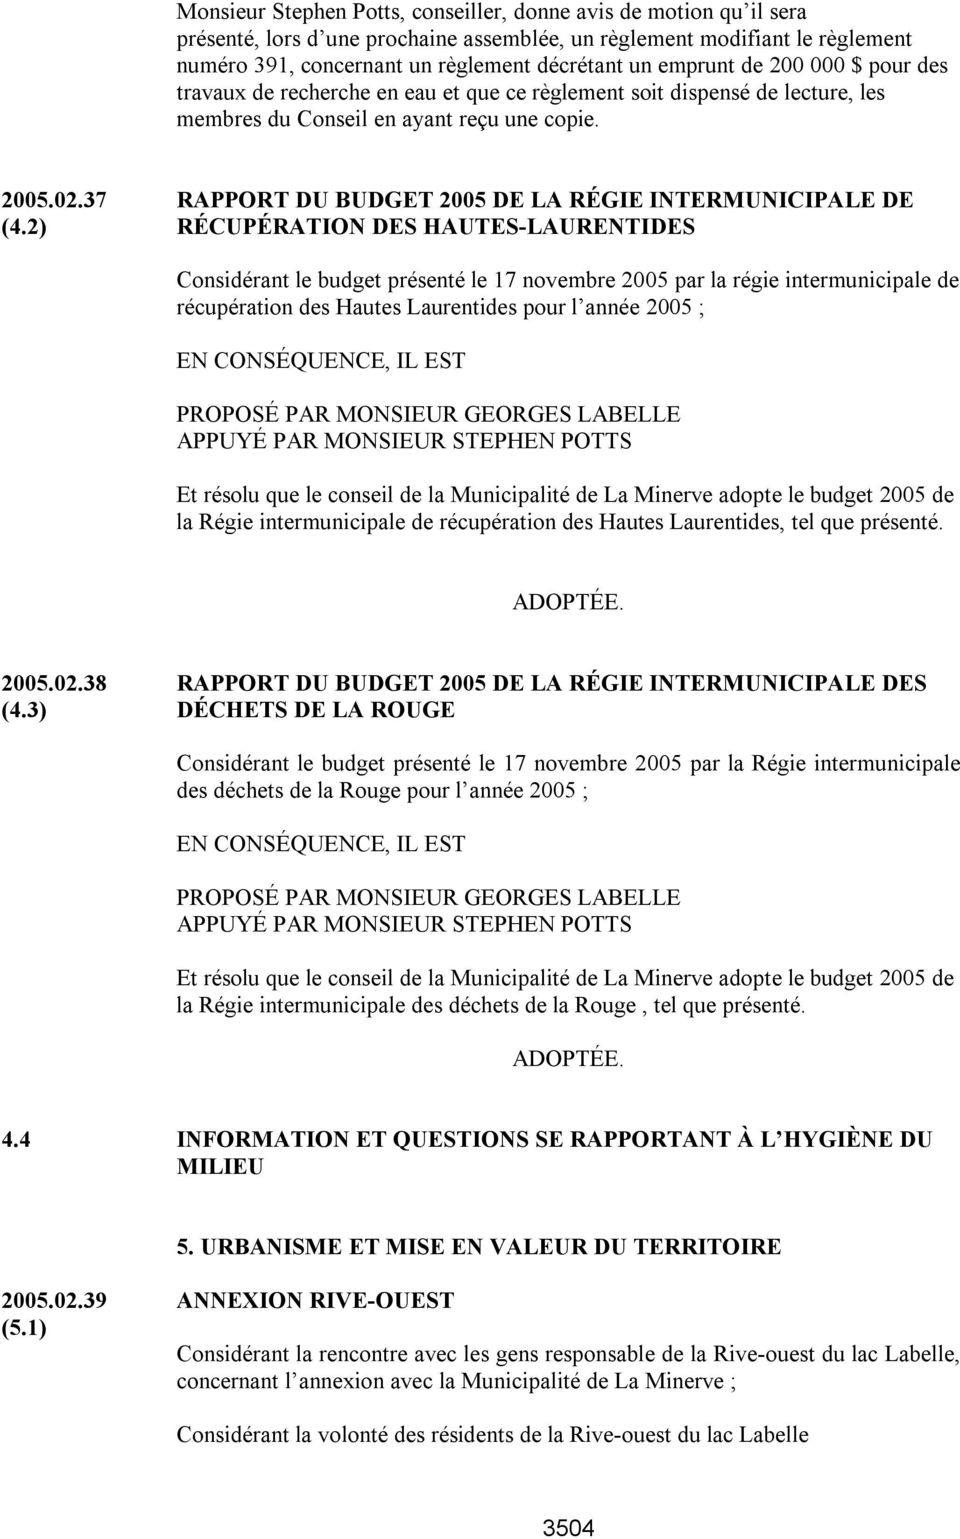 37 RAPPORT DU BUDGET 2005 DE LA RÉGIE INTERMUNICIPALE DE (4.